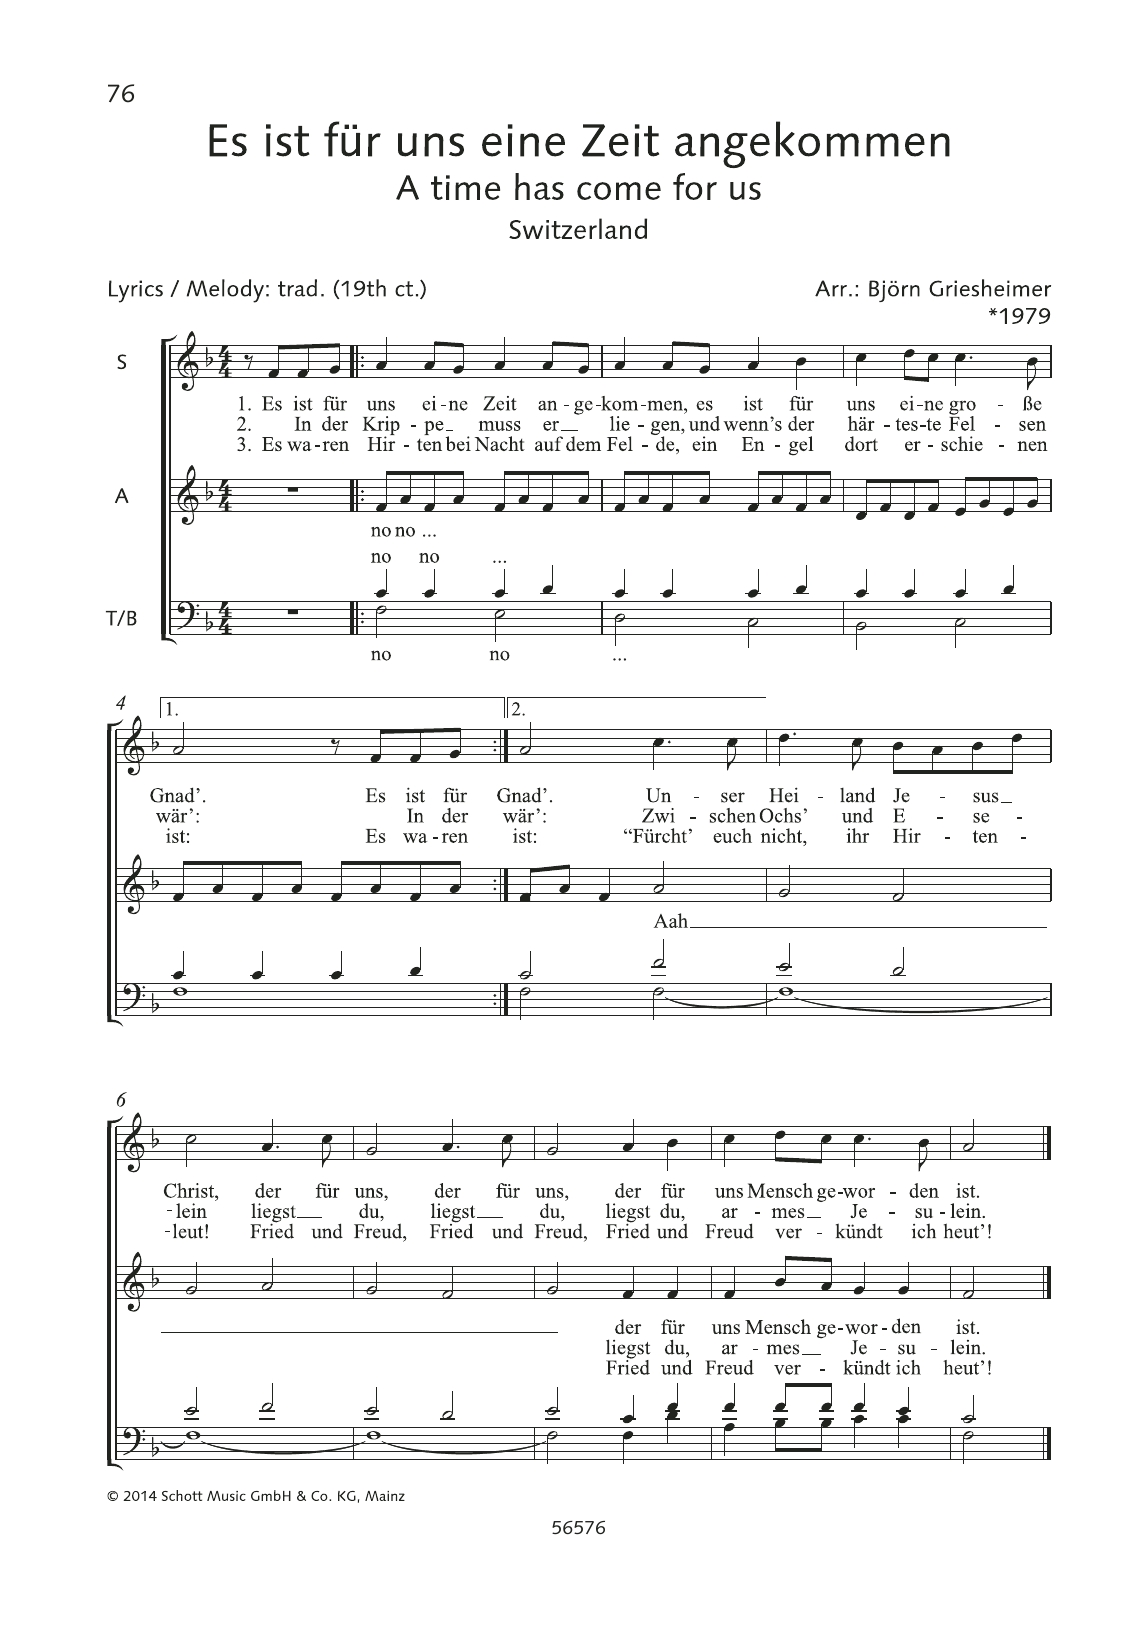 Download Björn Griesheimer Es ist fur uns eine Zeit angekommen Sheet Music and learn how to play SATB Choir PDF digital score in minutes